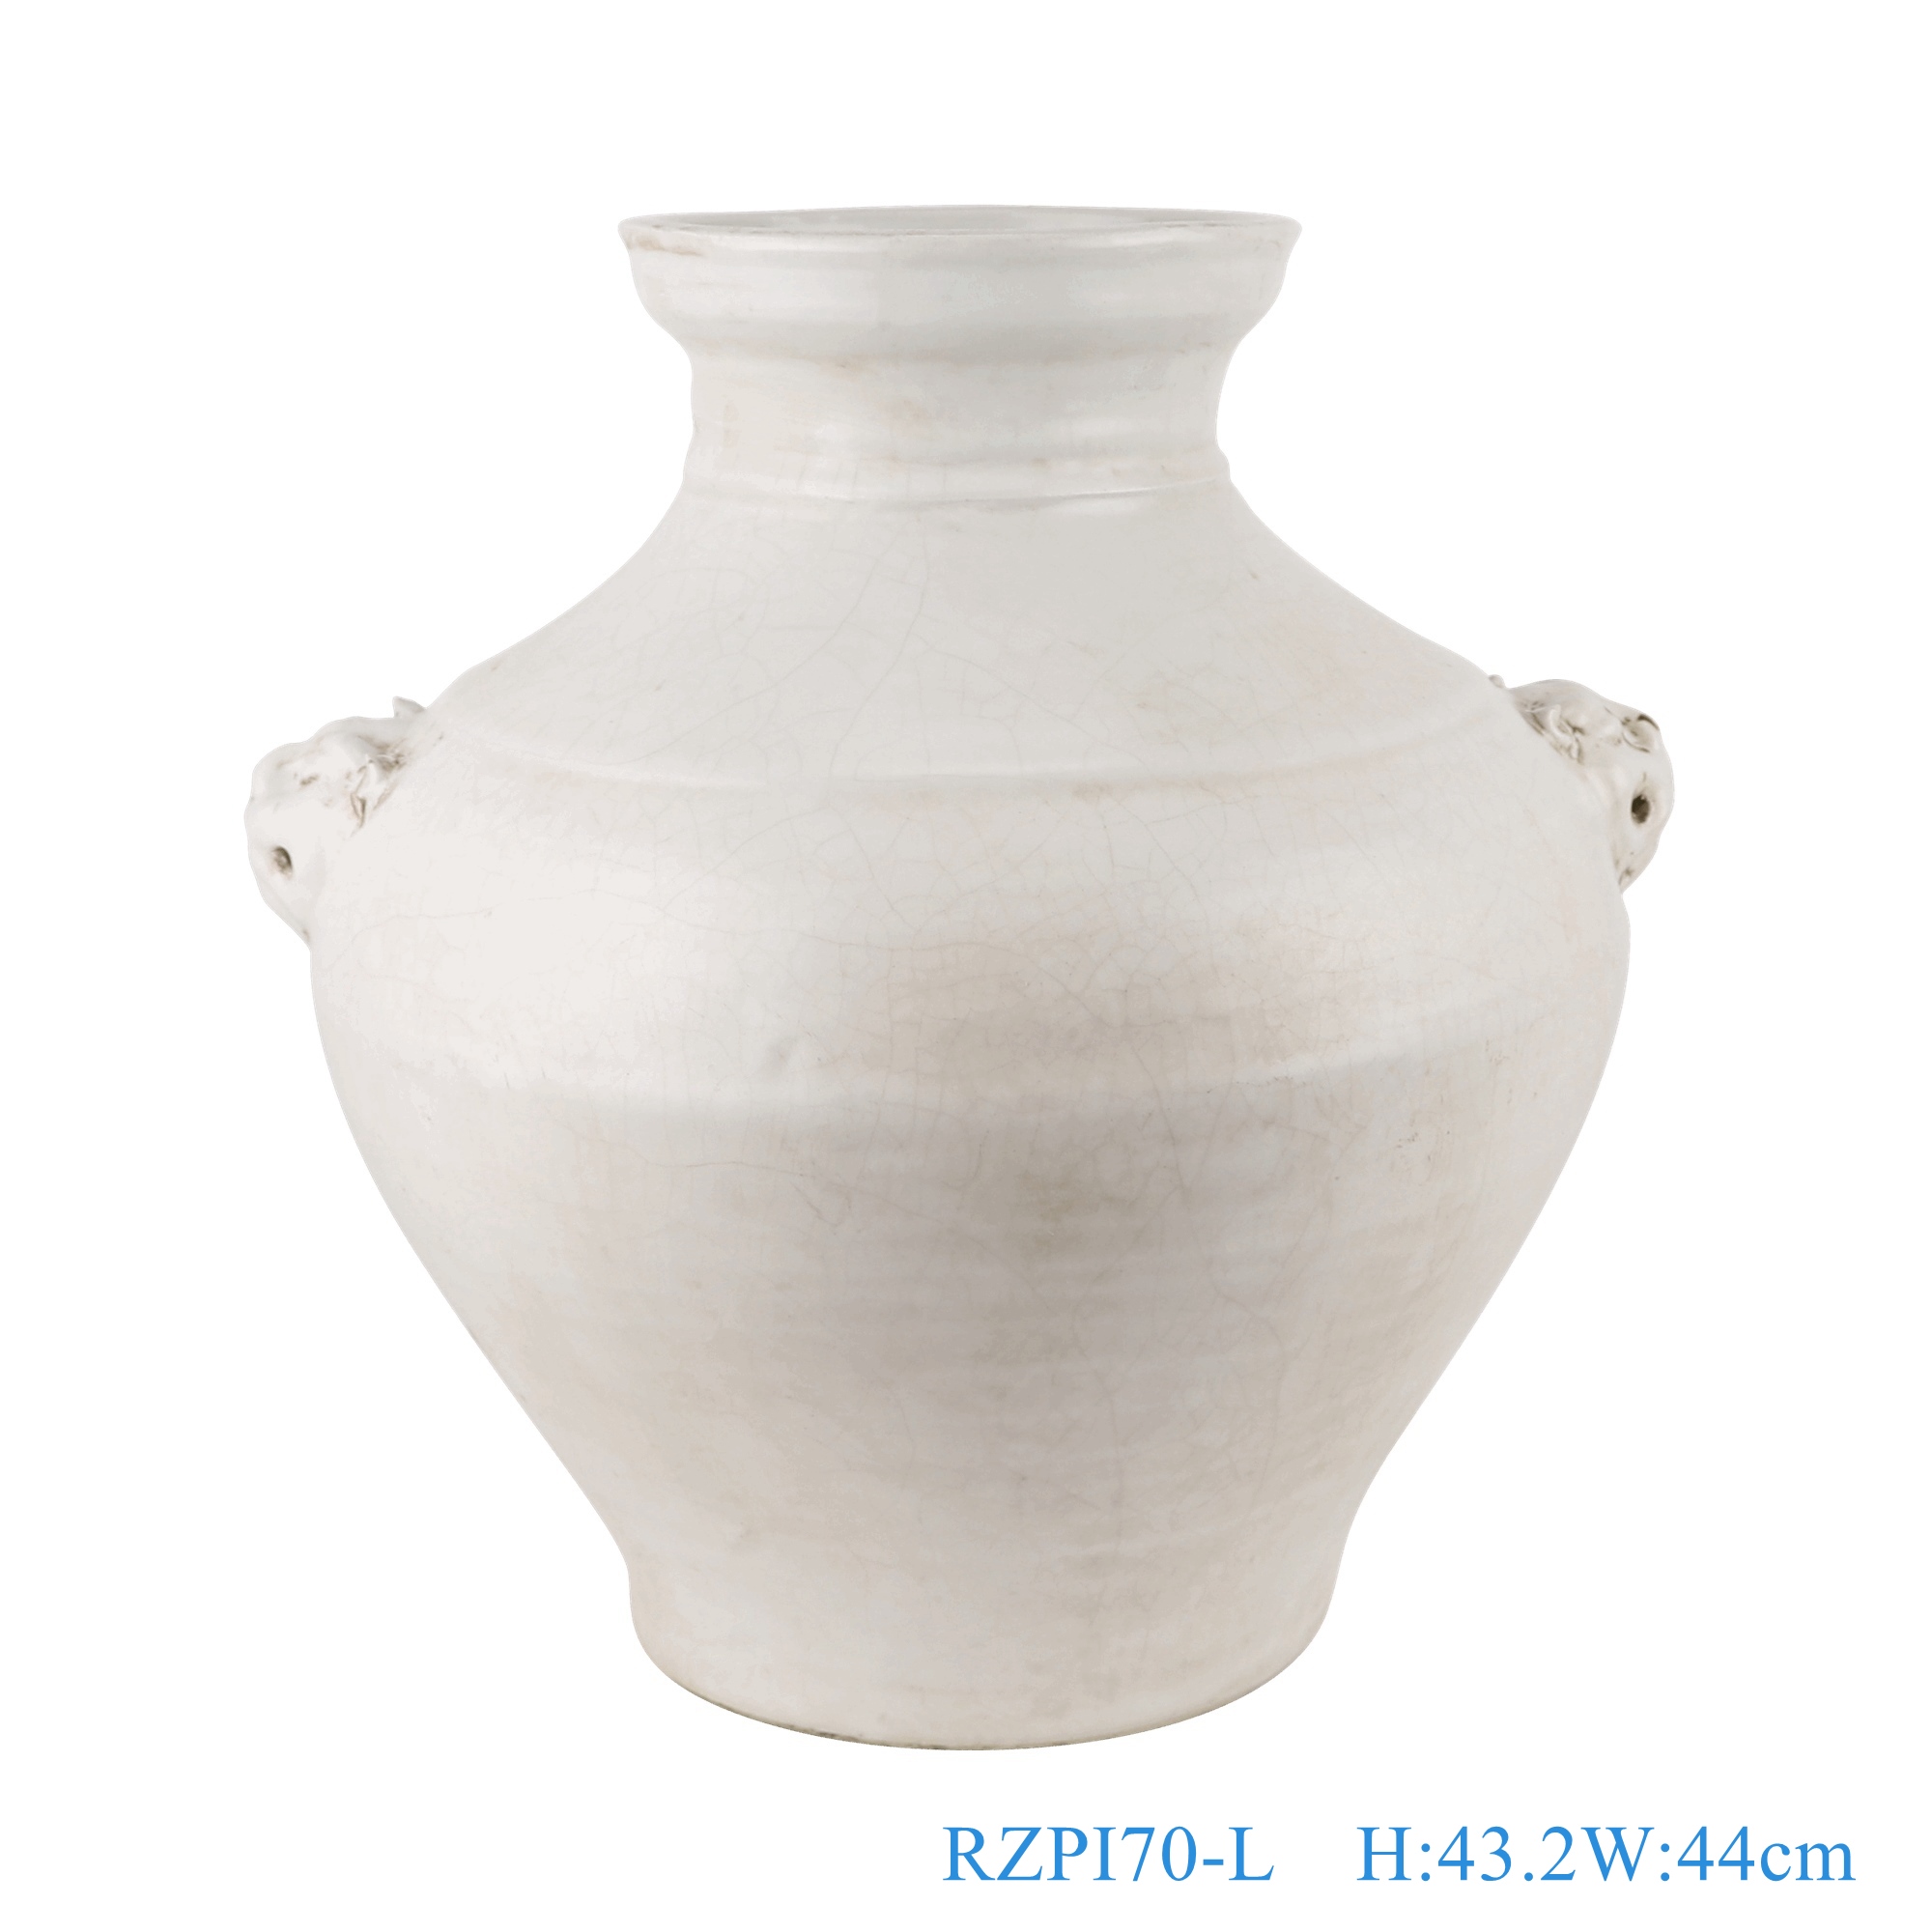 白色狮子头耳大罐大号，产品编号：RZPI70-L       产品尺寸(单位cm):  高43.2直径44口径底径21.3重量11KG